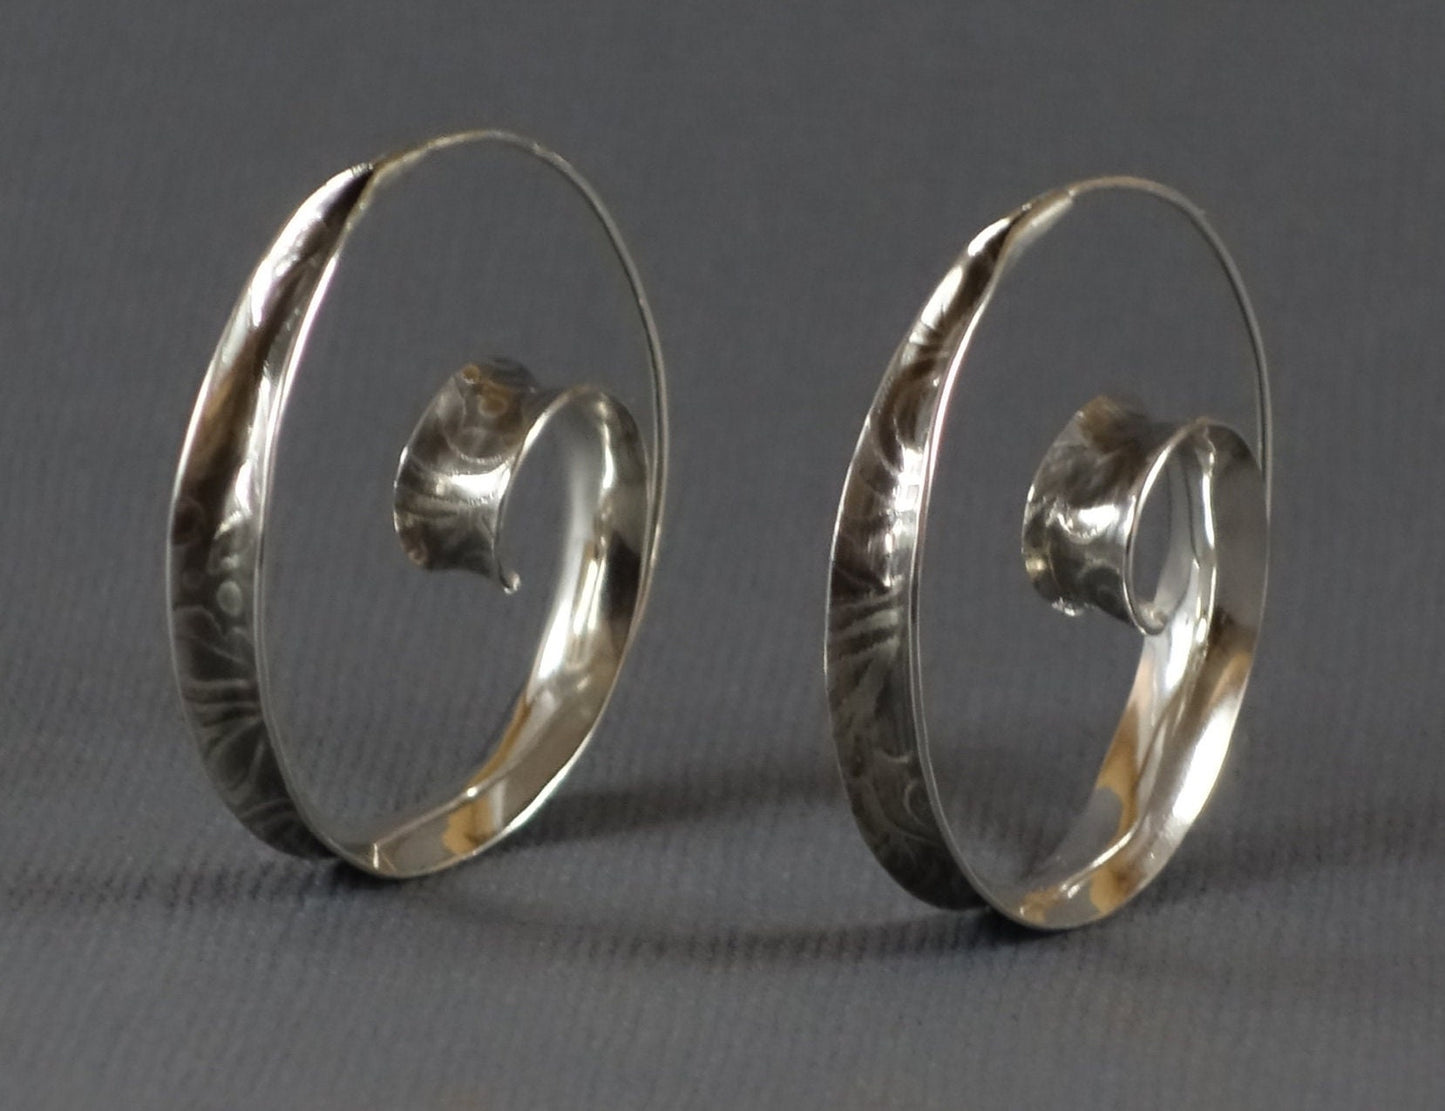 Sterling Silver Textured Spiral Hoop Earrings, Anticlastic Spiral Earrings, Large Silver Spiral